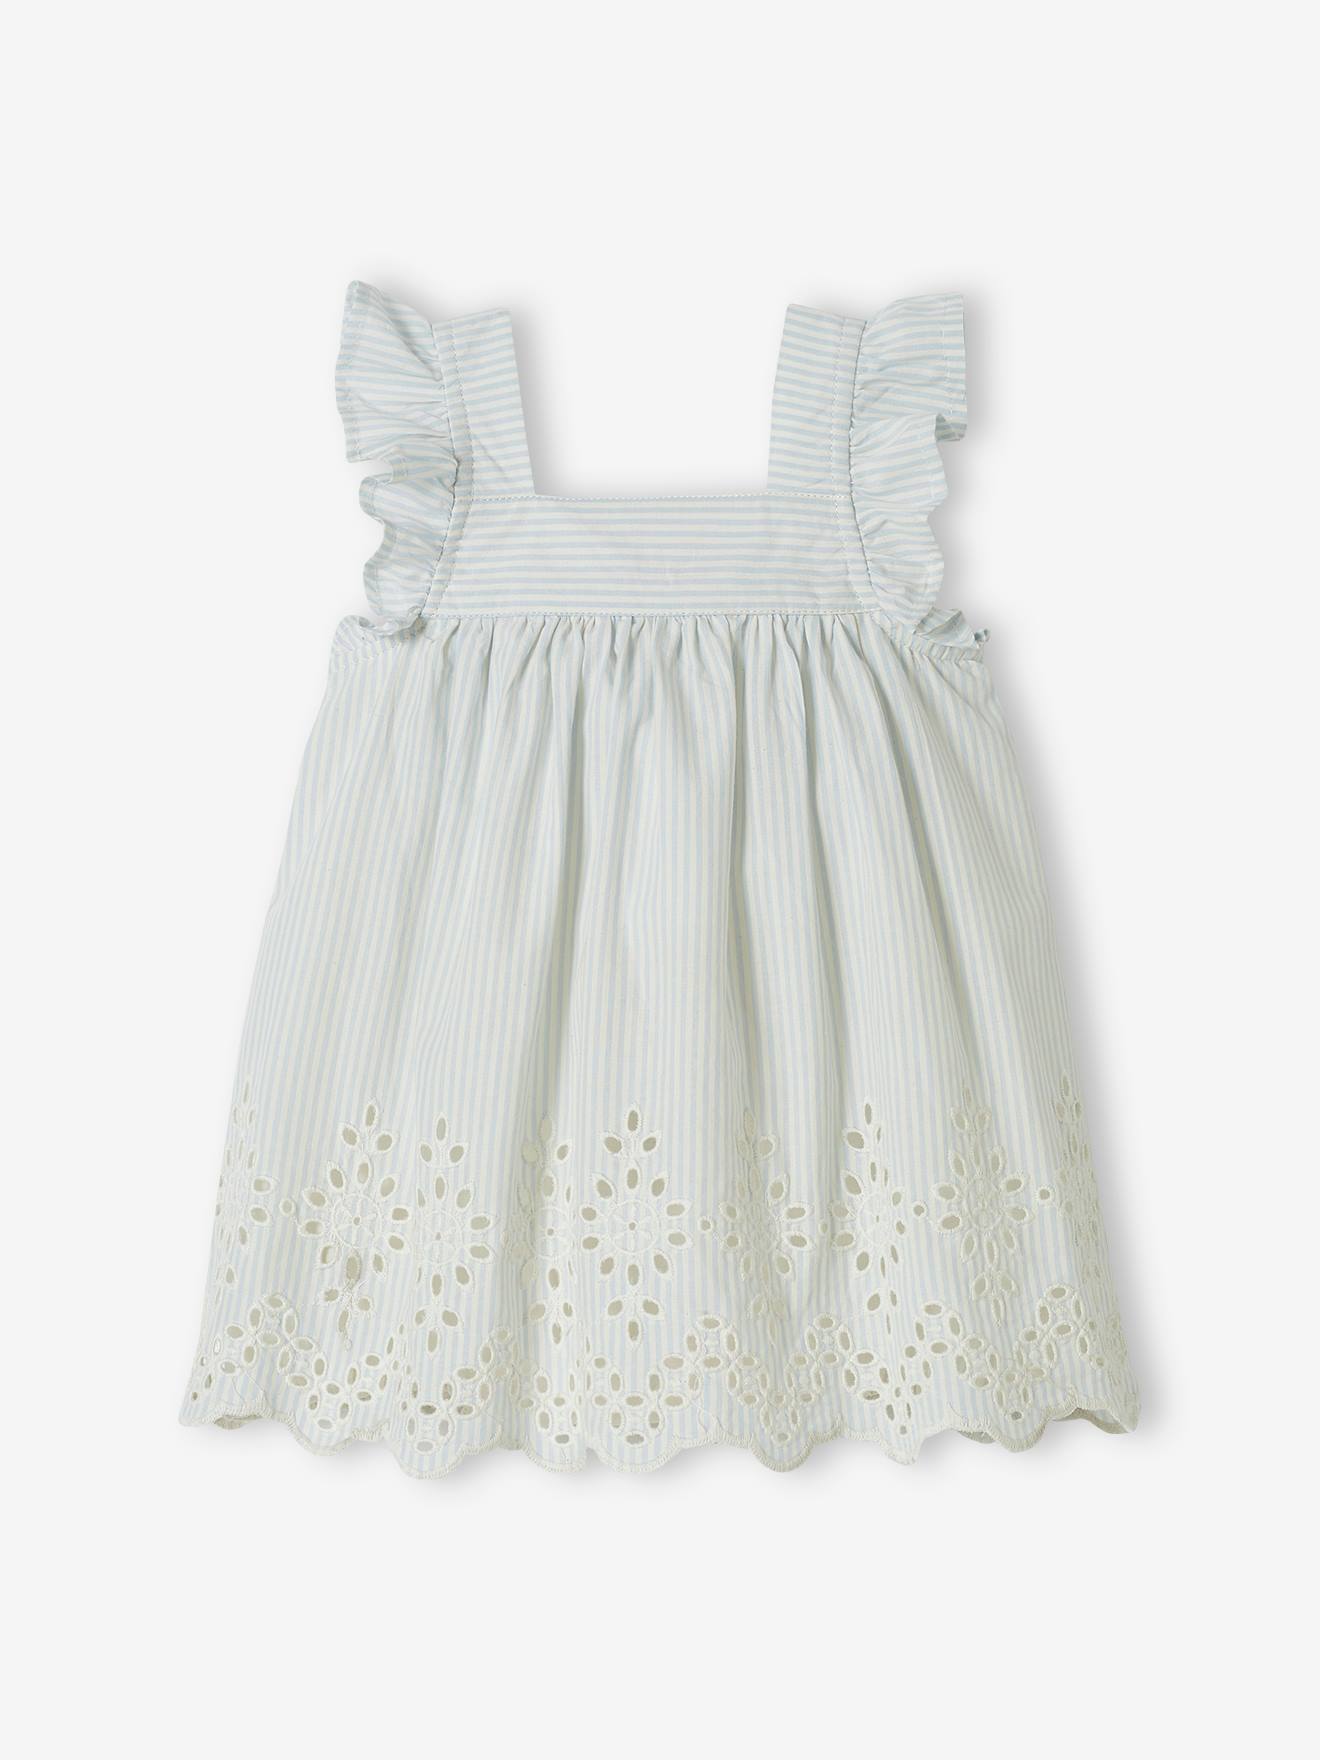 Feestelijke jurk voor baby met rompertje hemelsblauw